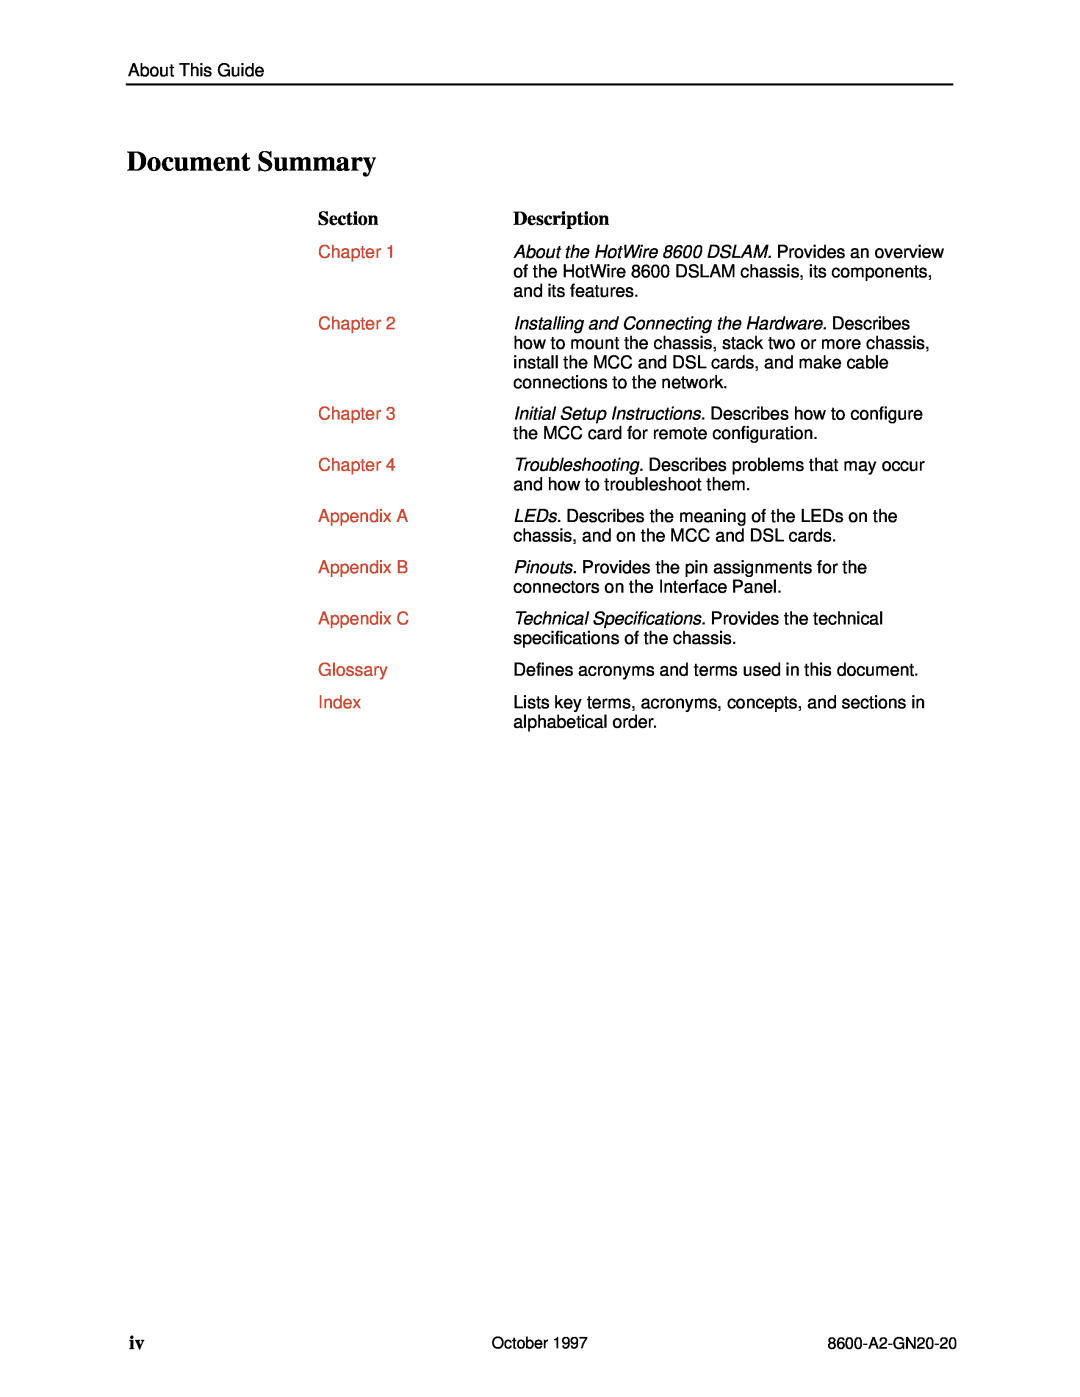 Nortel Networks 8600 Document Summary, Section, Description, Chapter, Appendix A, Appendix B, Appendix C, Glossary, Index 